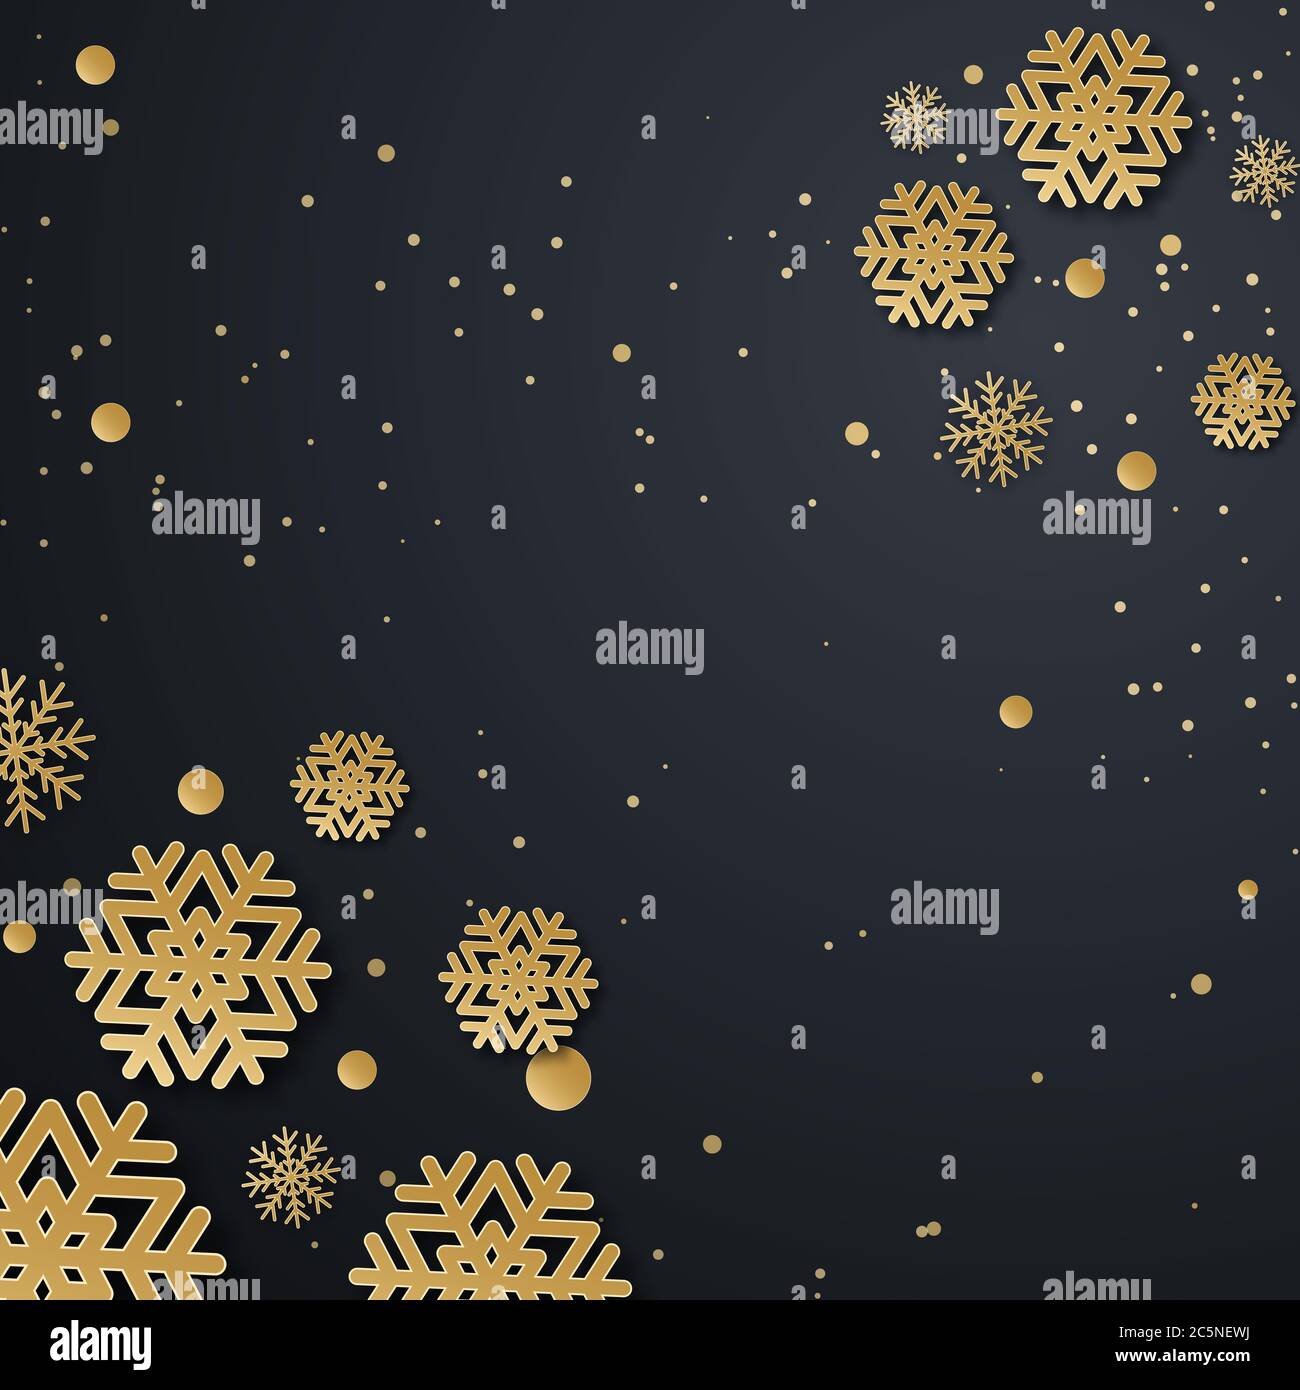 Weihnachtsfeiertage Design mit Papier geschnitten Schneeflocke Stil. Raffinierter dunkler Hintergrund mit goldenem Grußtext. Vektorgrafik Stockfoto